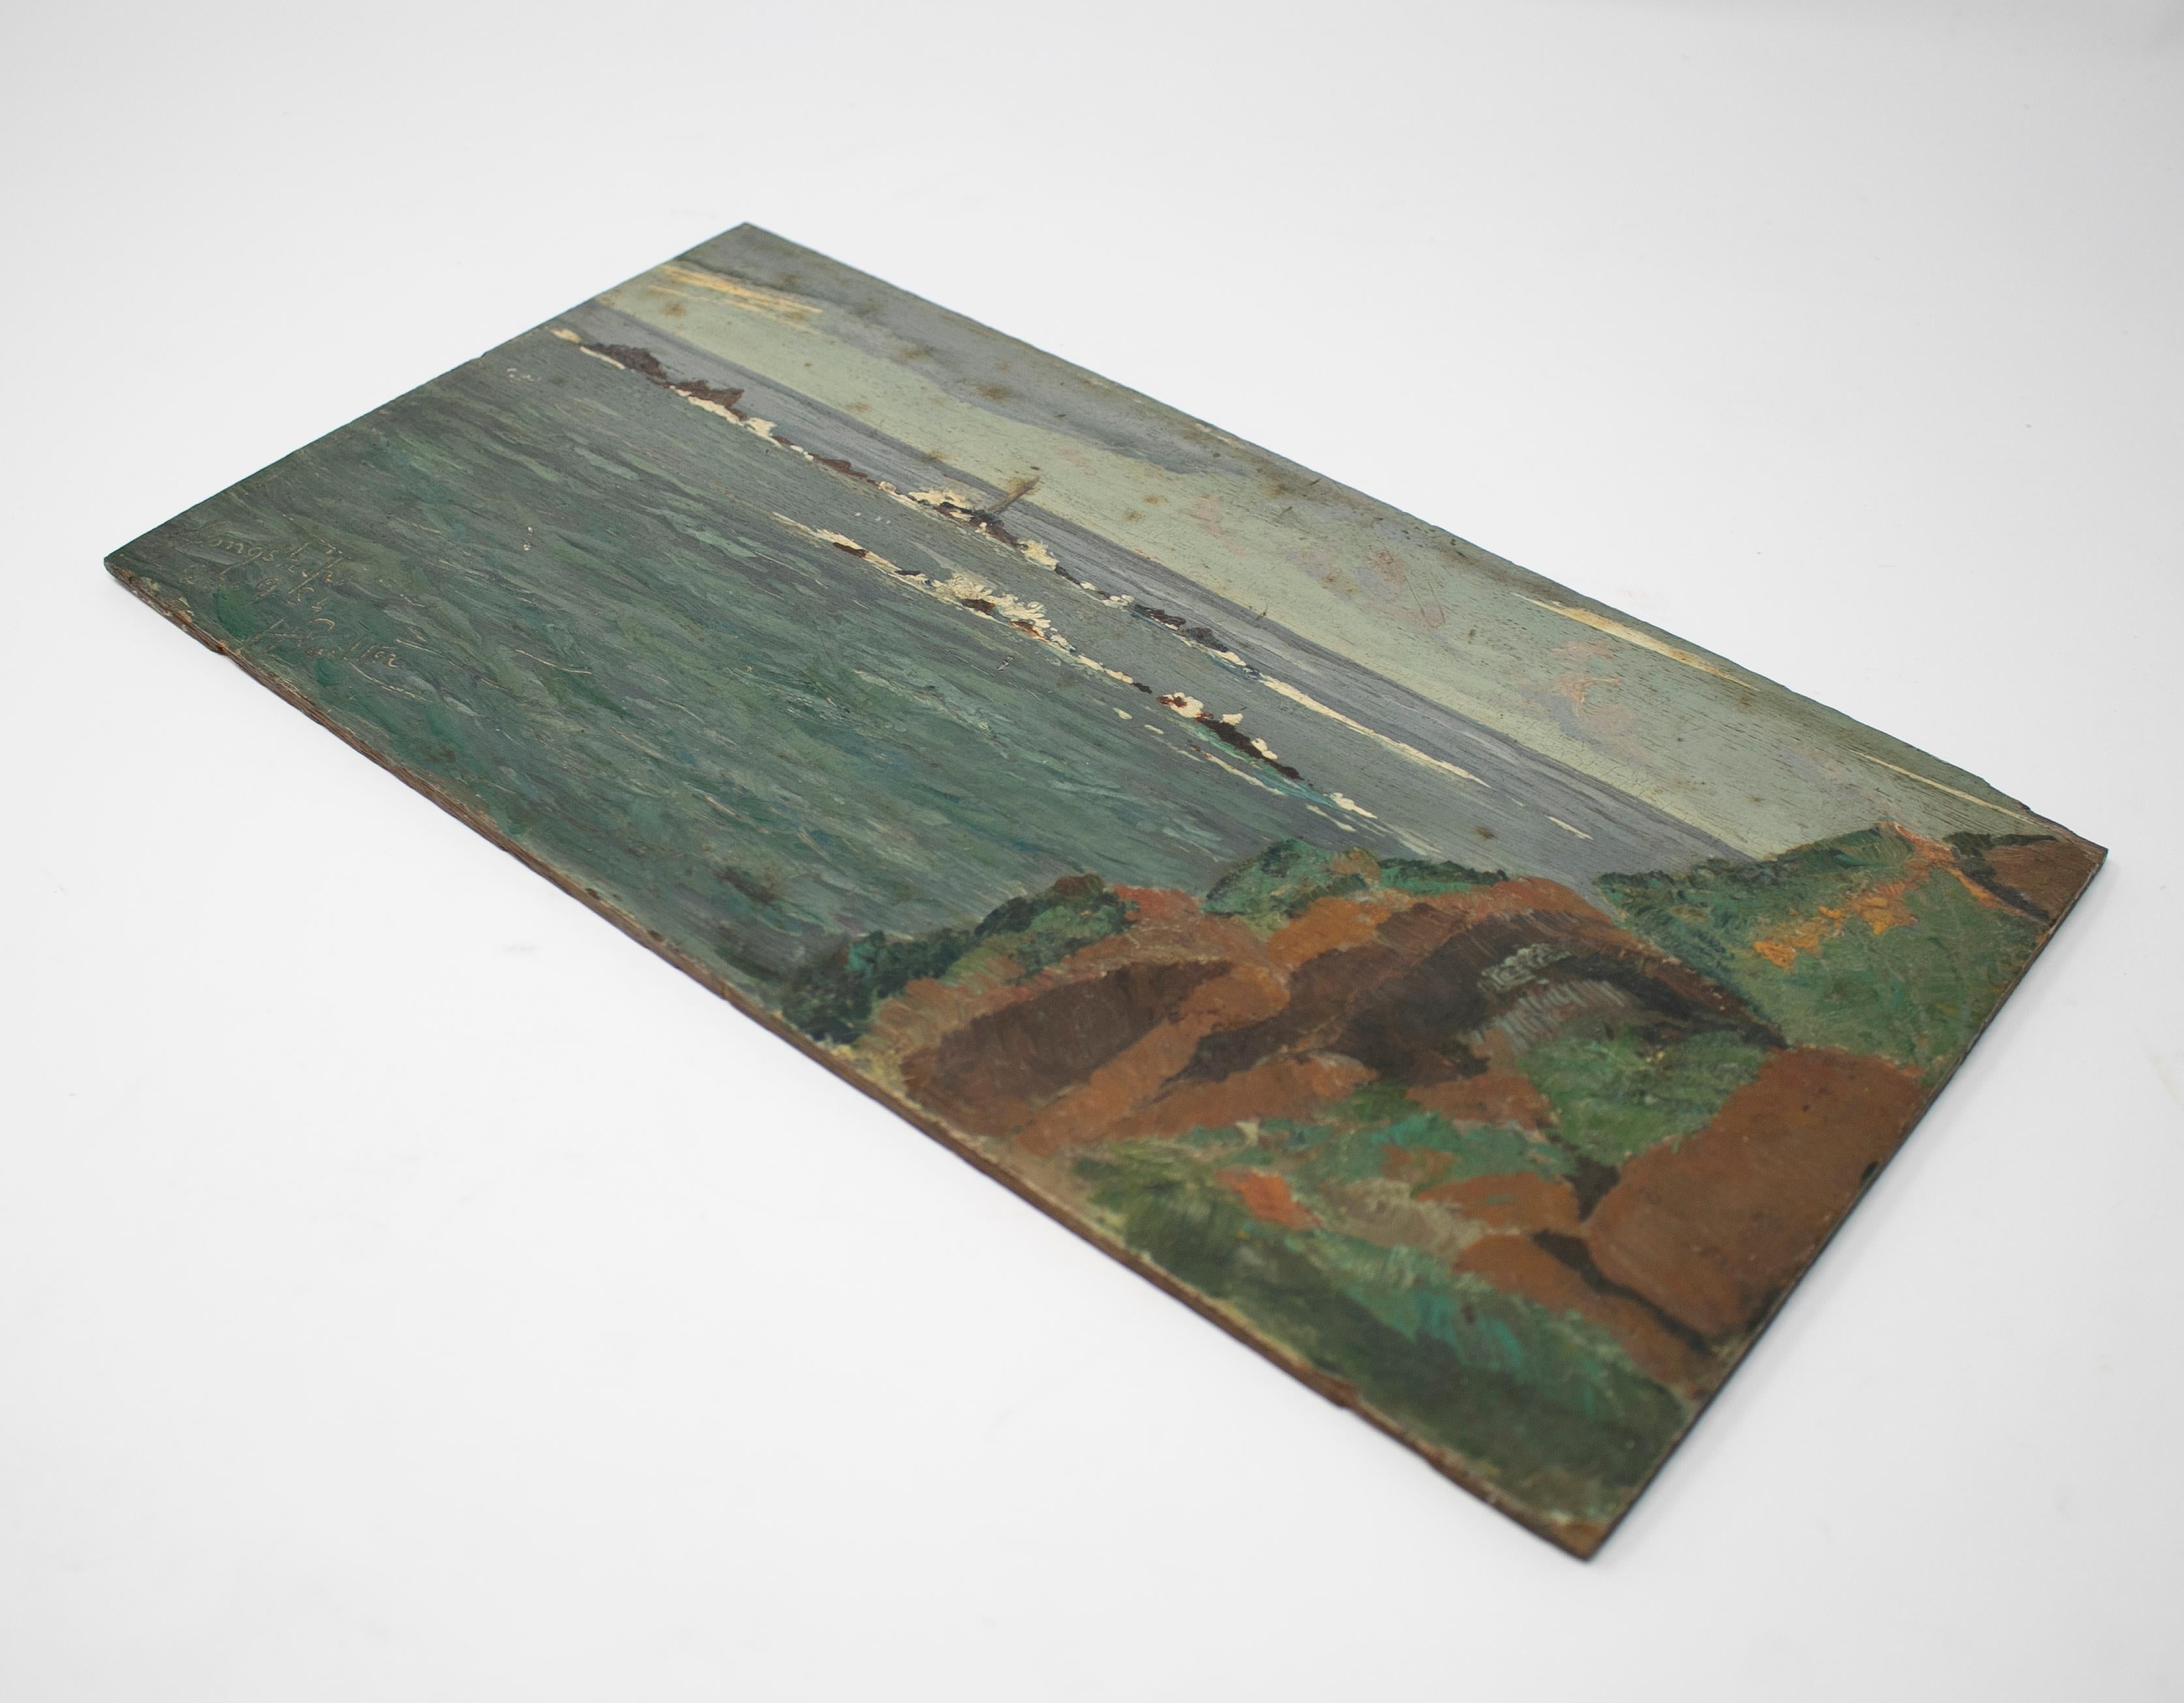 peinture de paysage marin à l'huile sur bois du 19ème siècle. 

Signé.